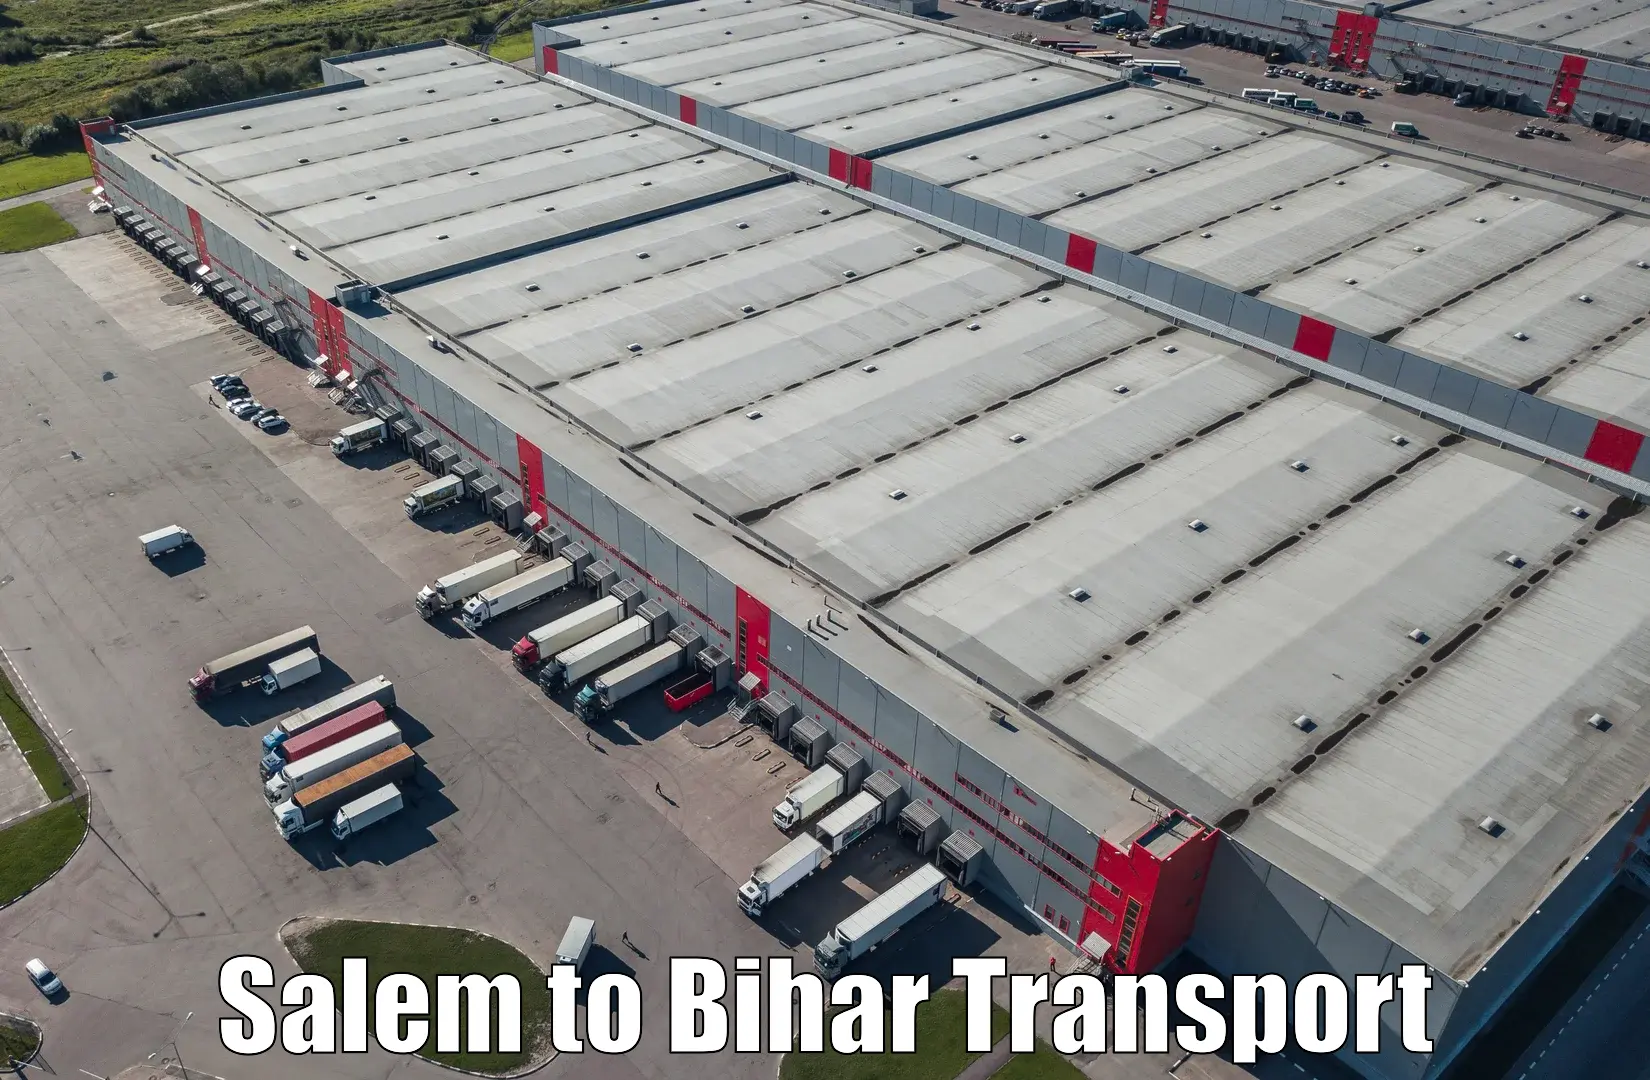 Bike shipping service Salem to Bihar